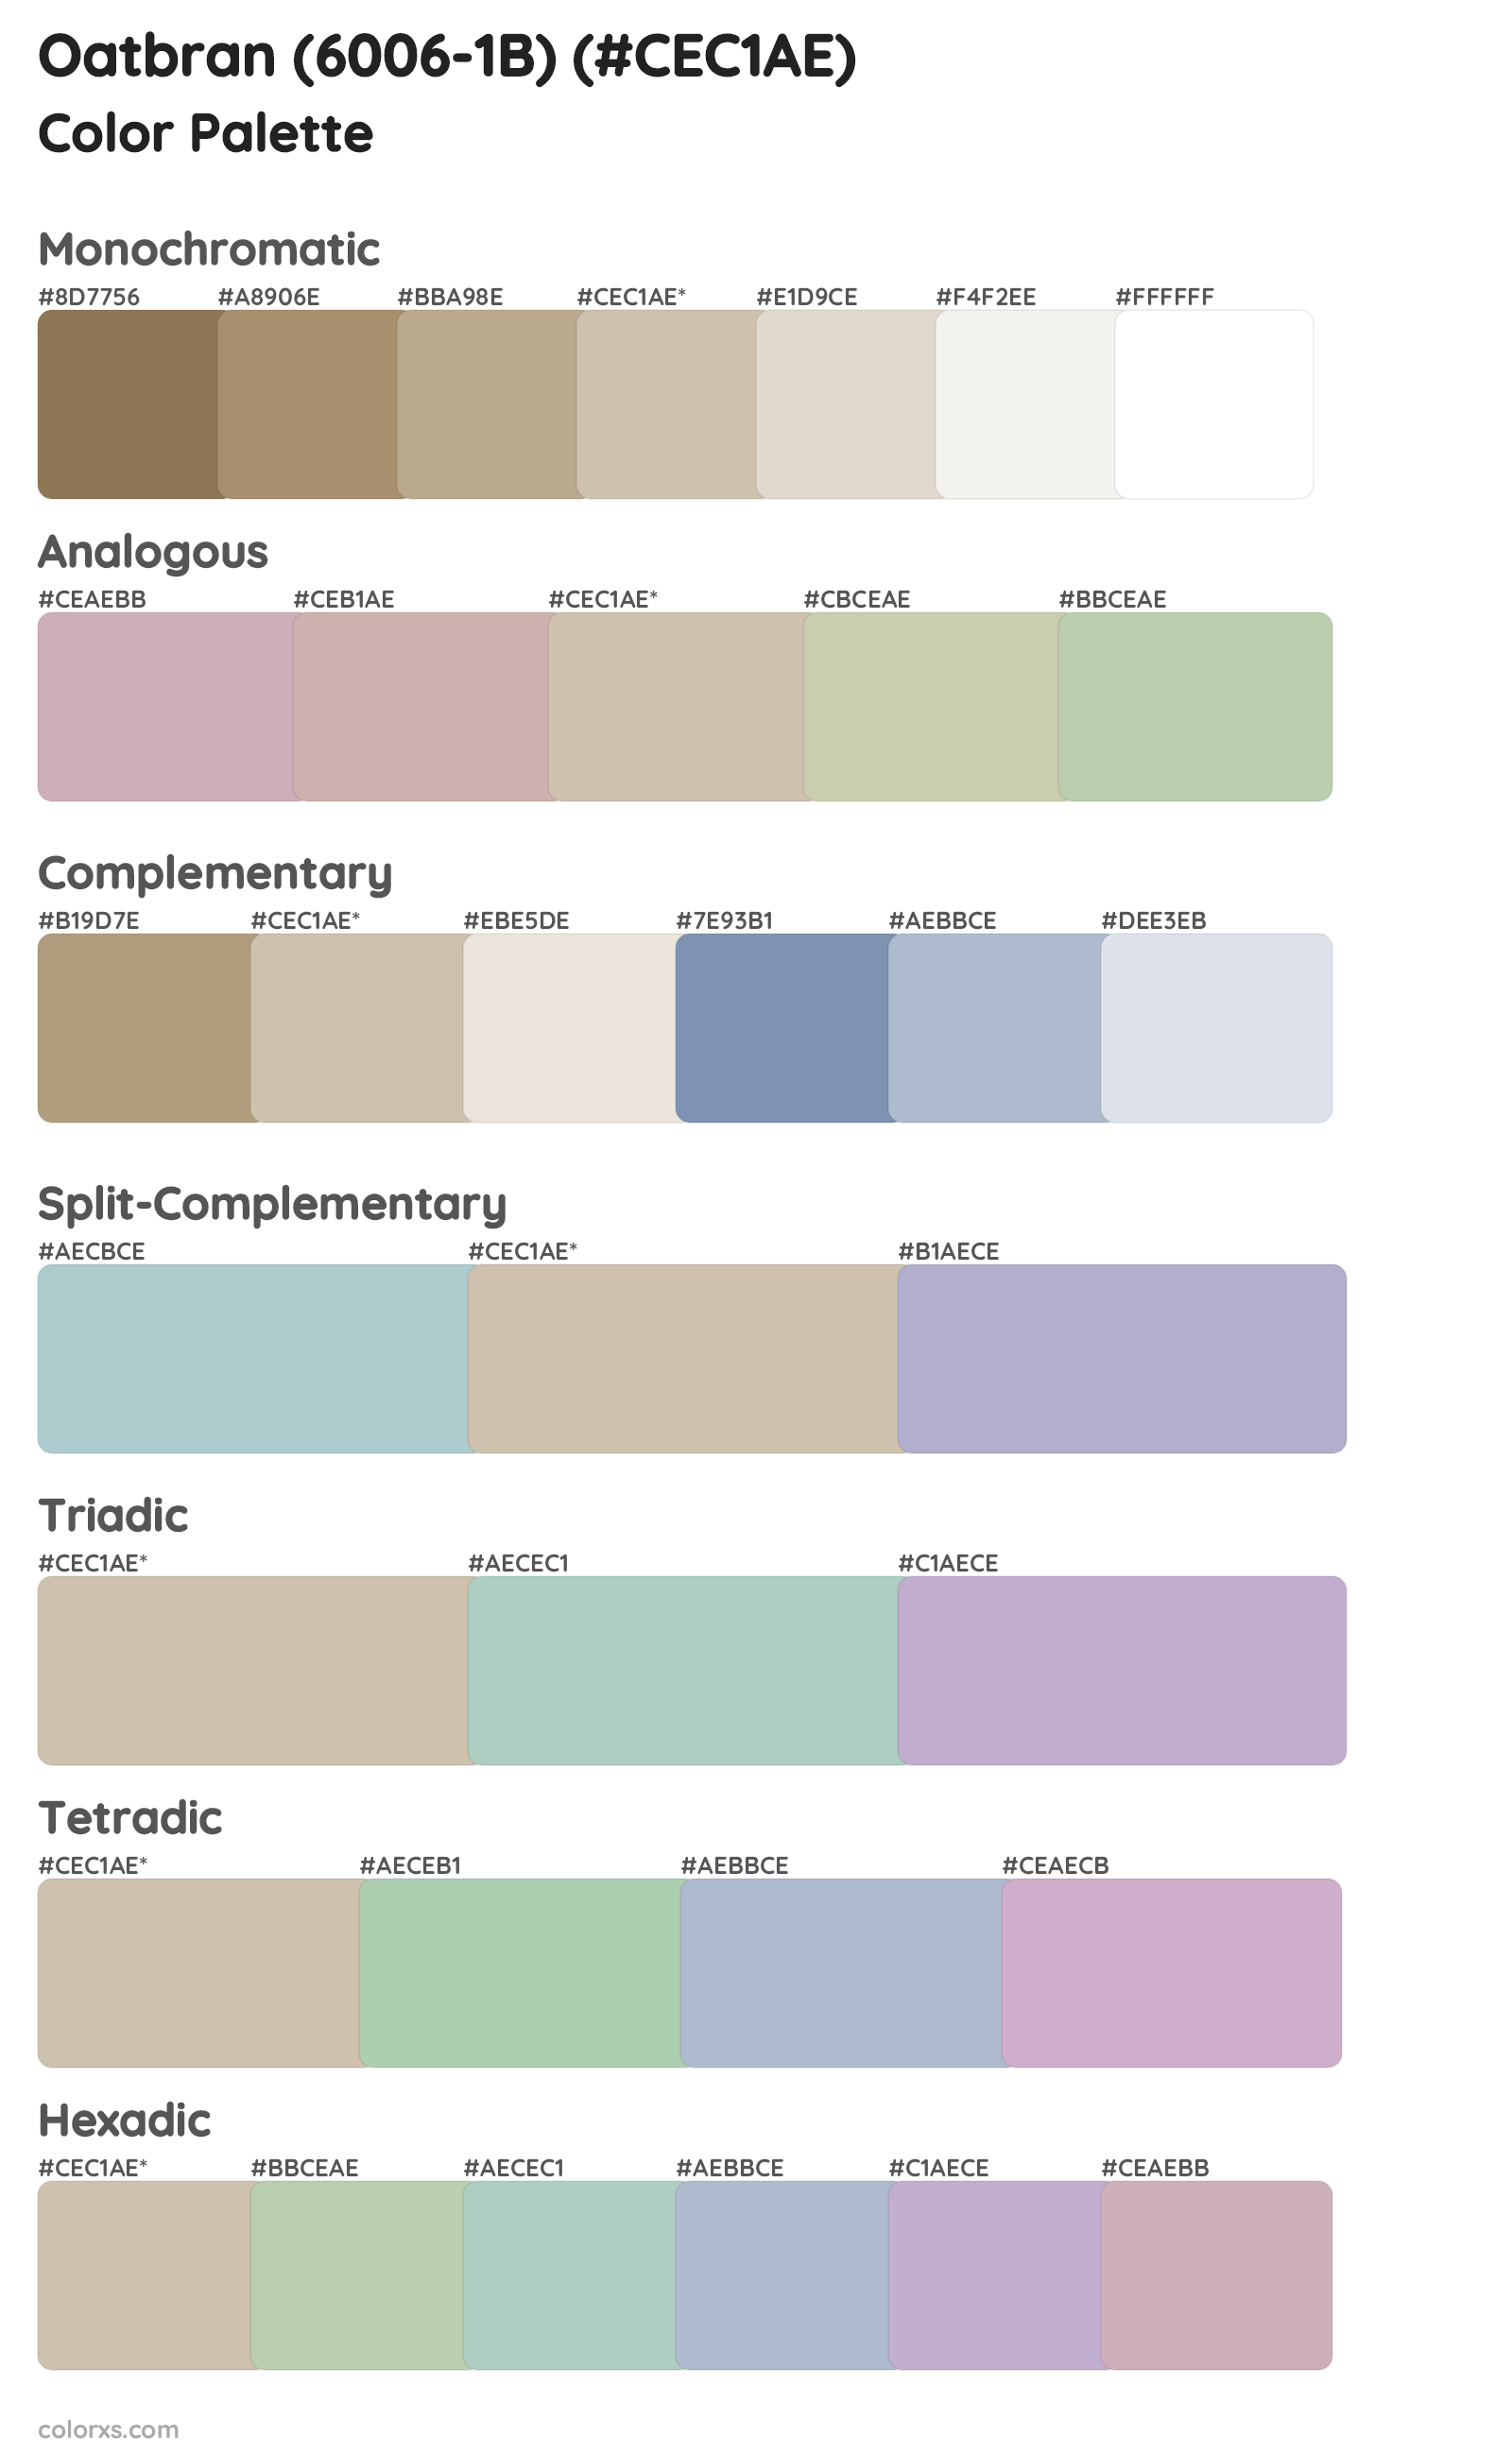 Oatbran (6006-1B) Color Scheme Palettes